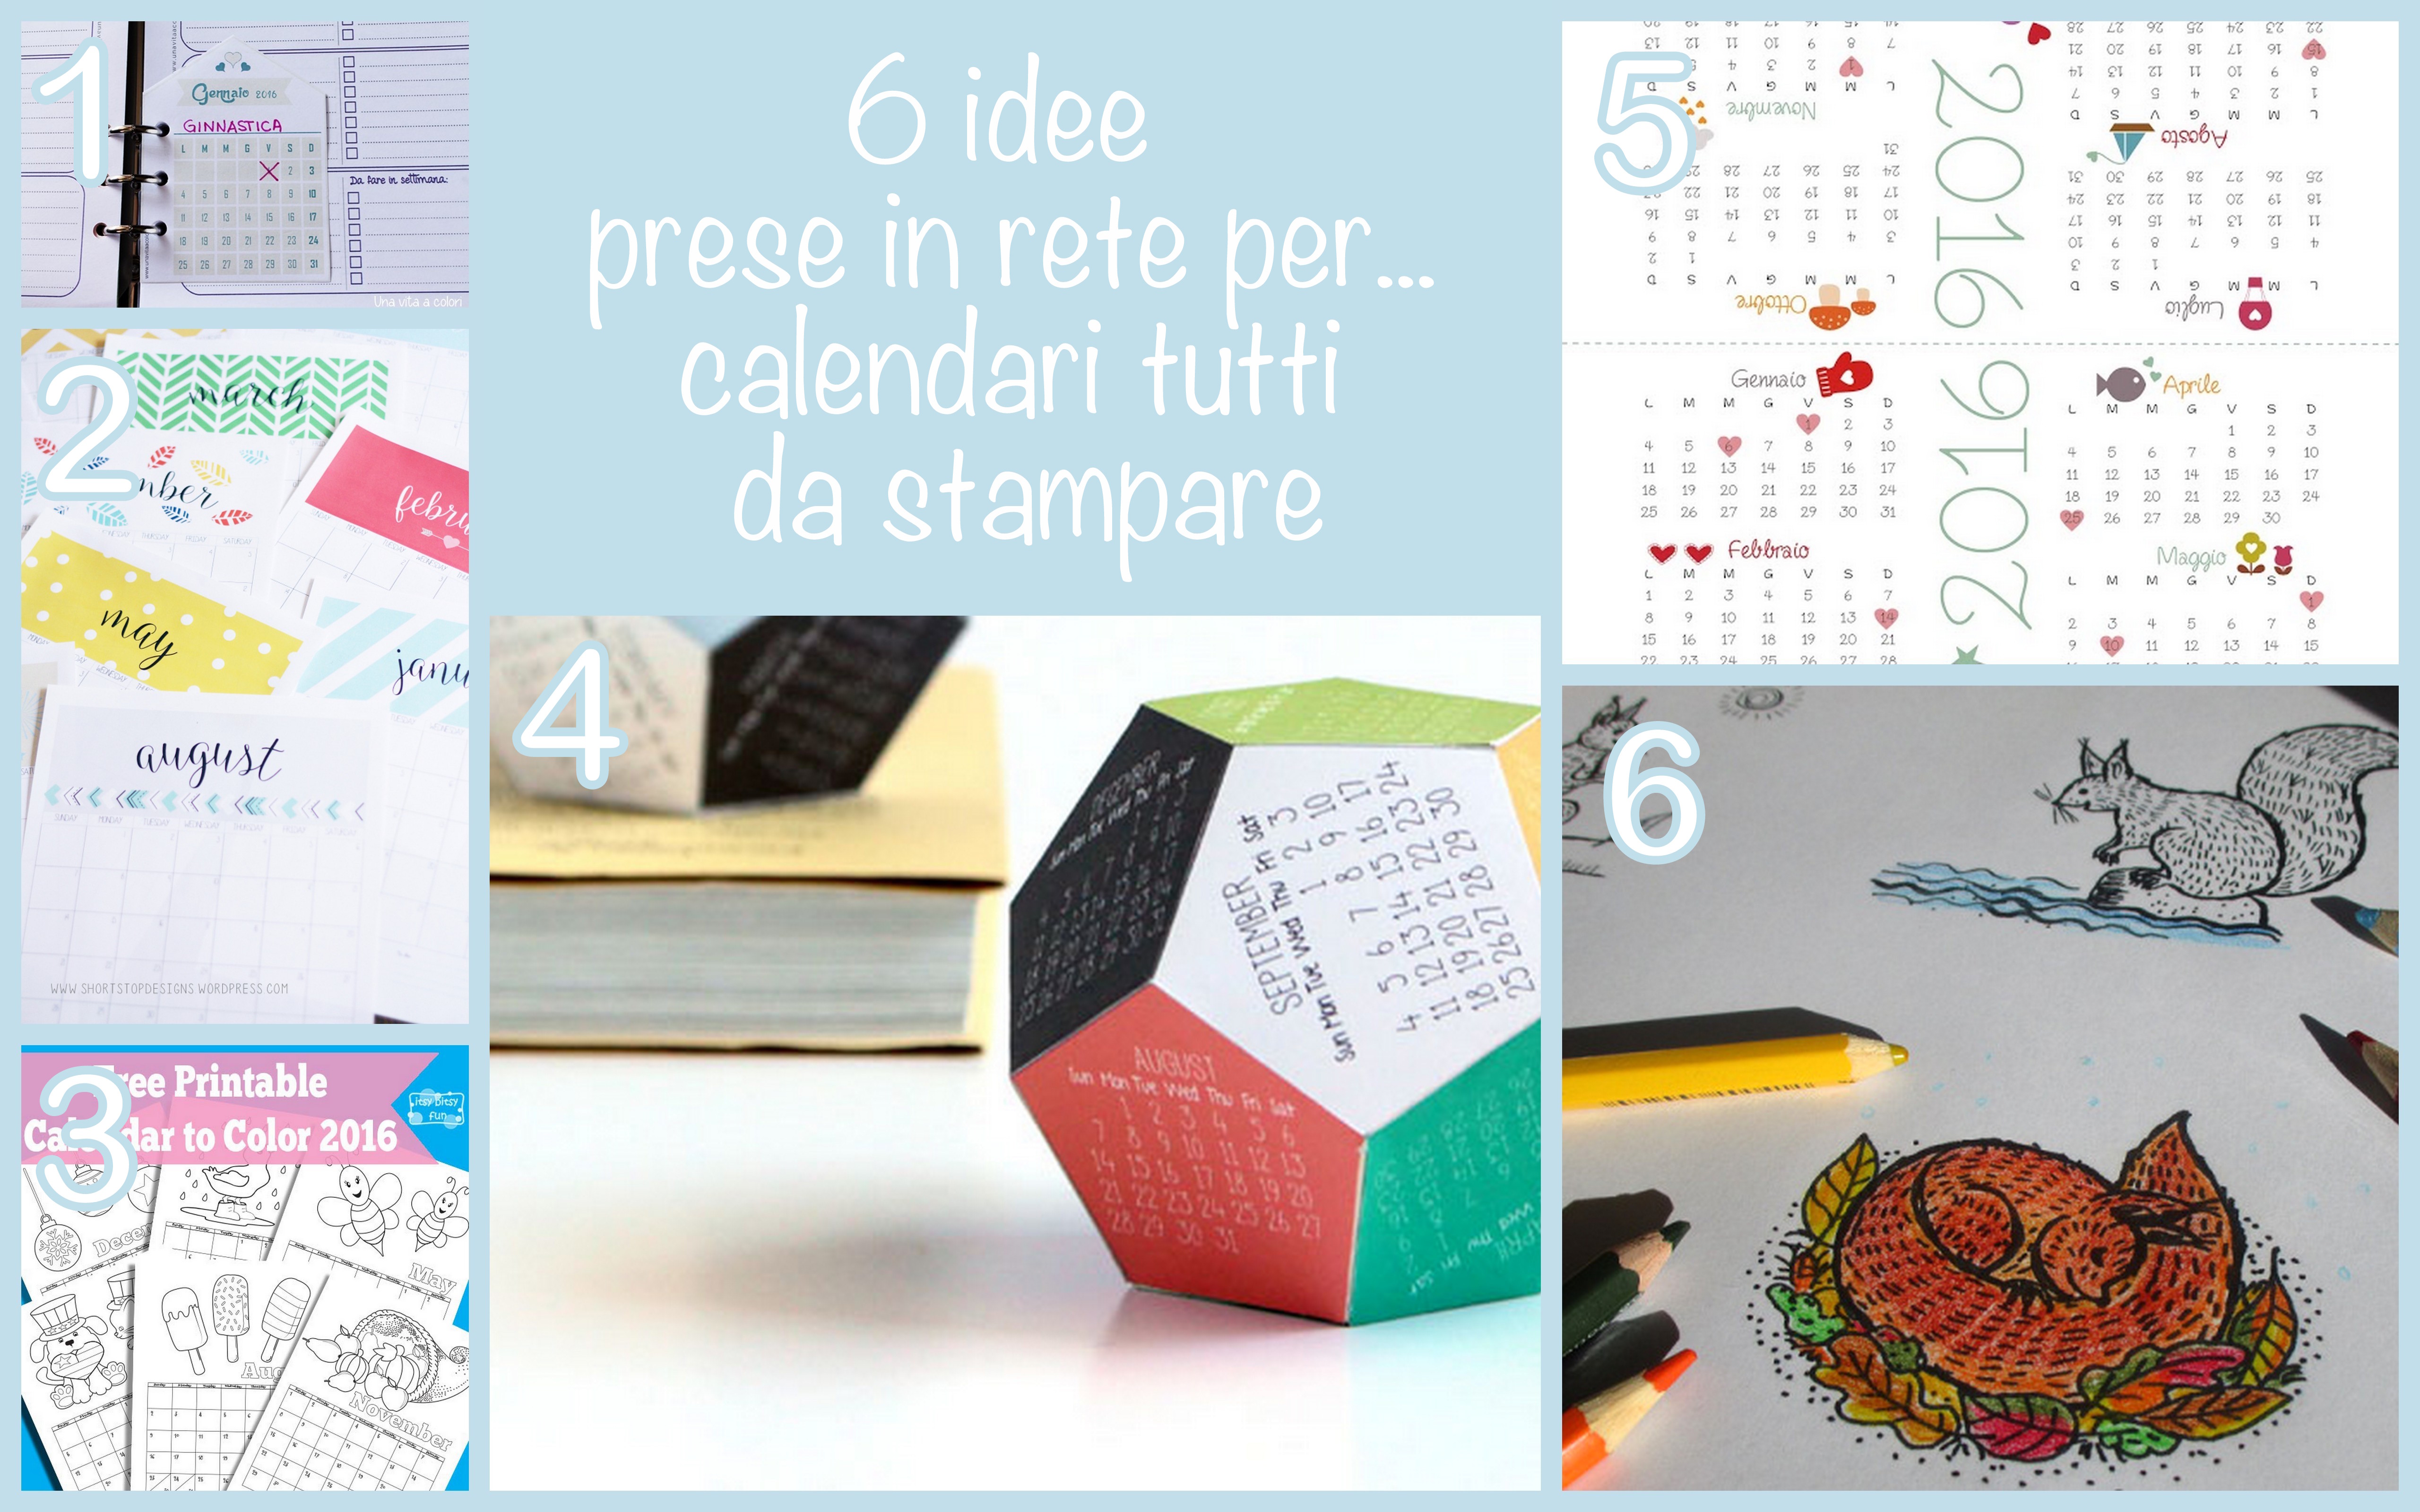 6 idee calendari 2016 da stampare